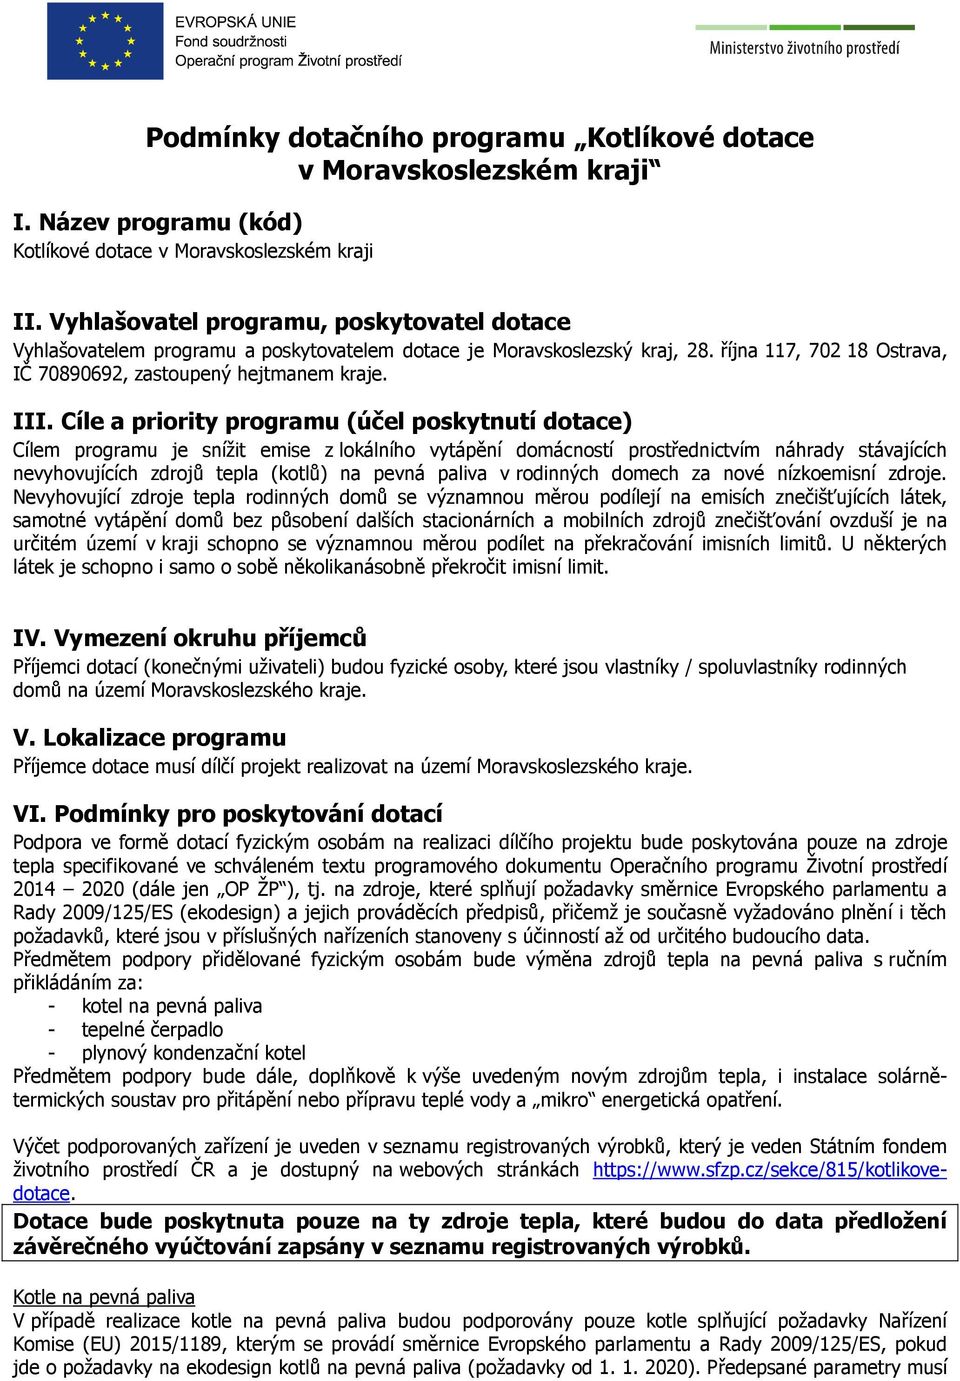 Podmínky dotačního programu Kotlíkové dotace v Moravskoslezském kraji - PDF  Free Download